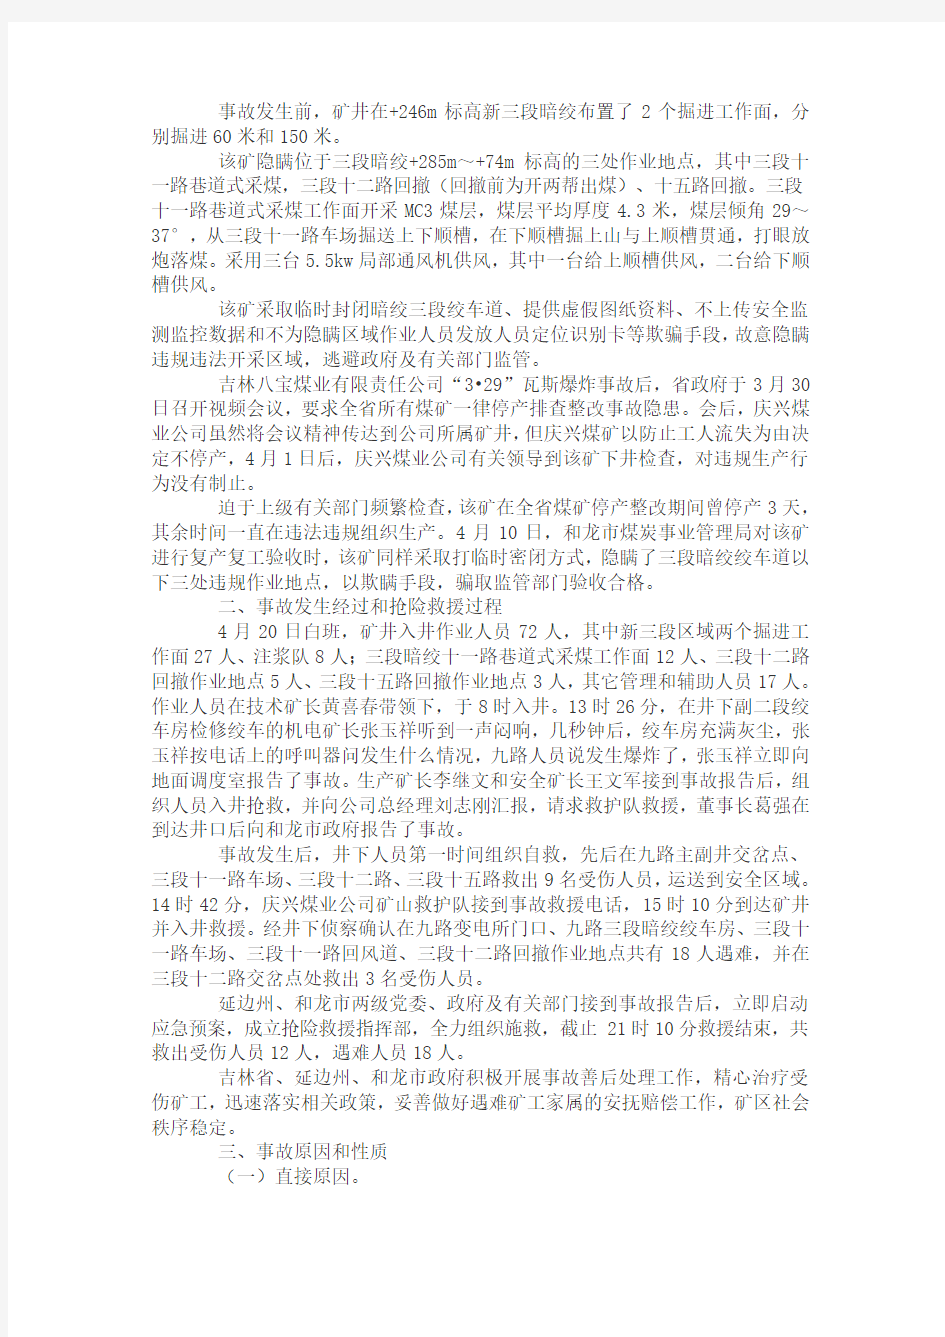 庆兴煤业“4.20”重大瓦斯爆炸事故调查报告DOC 文档